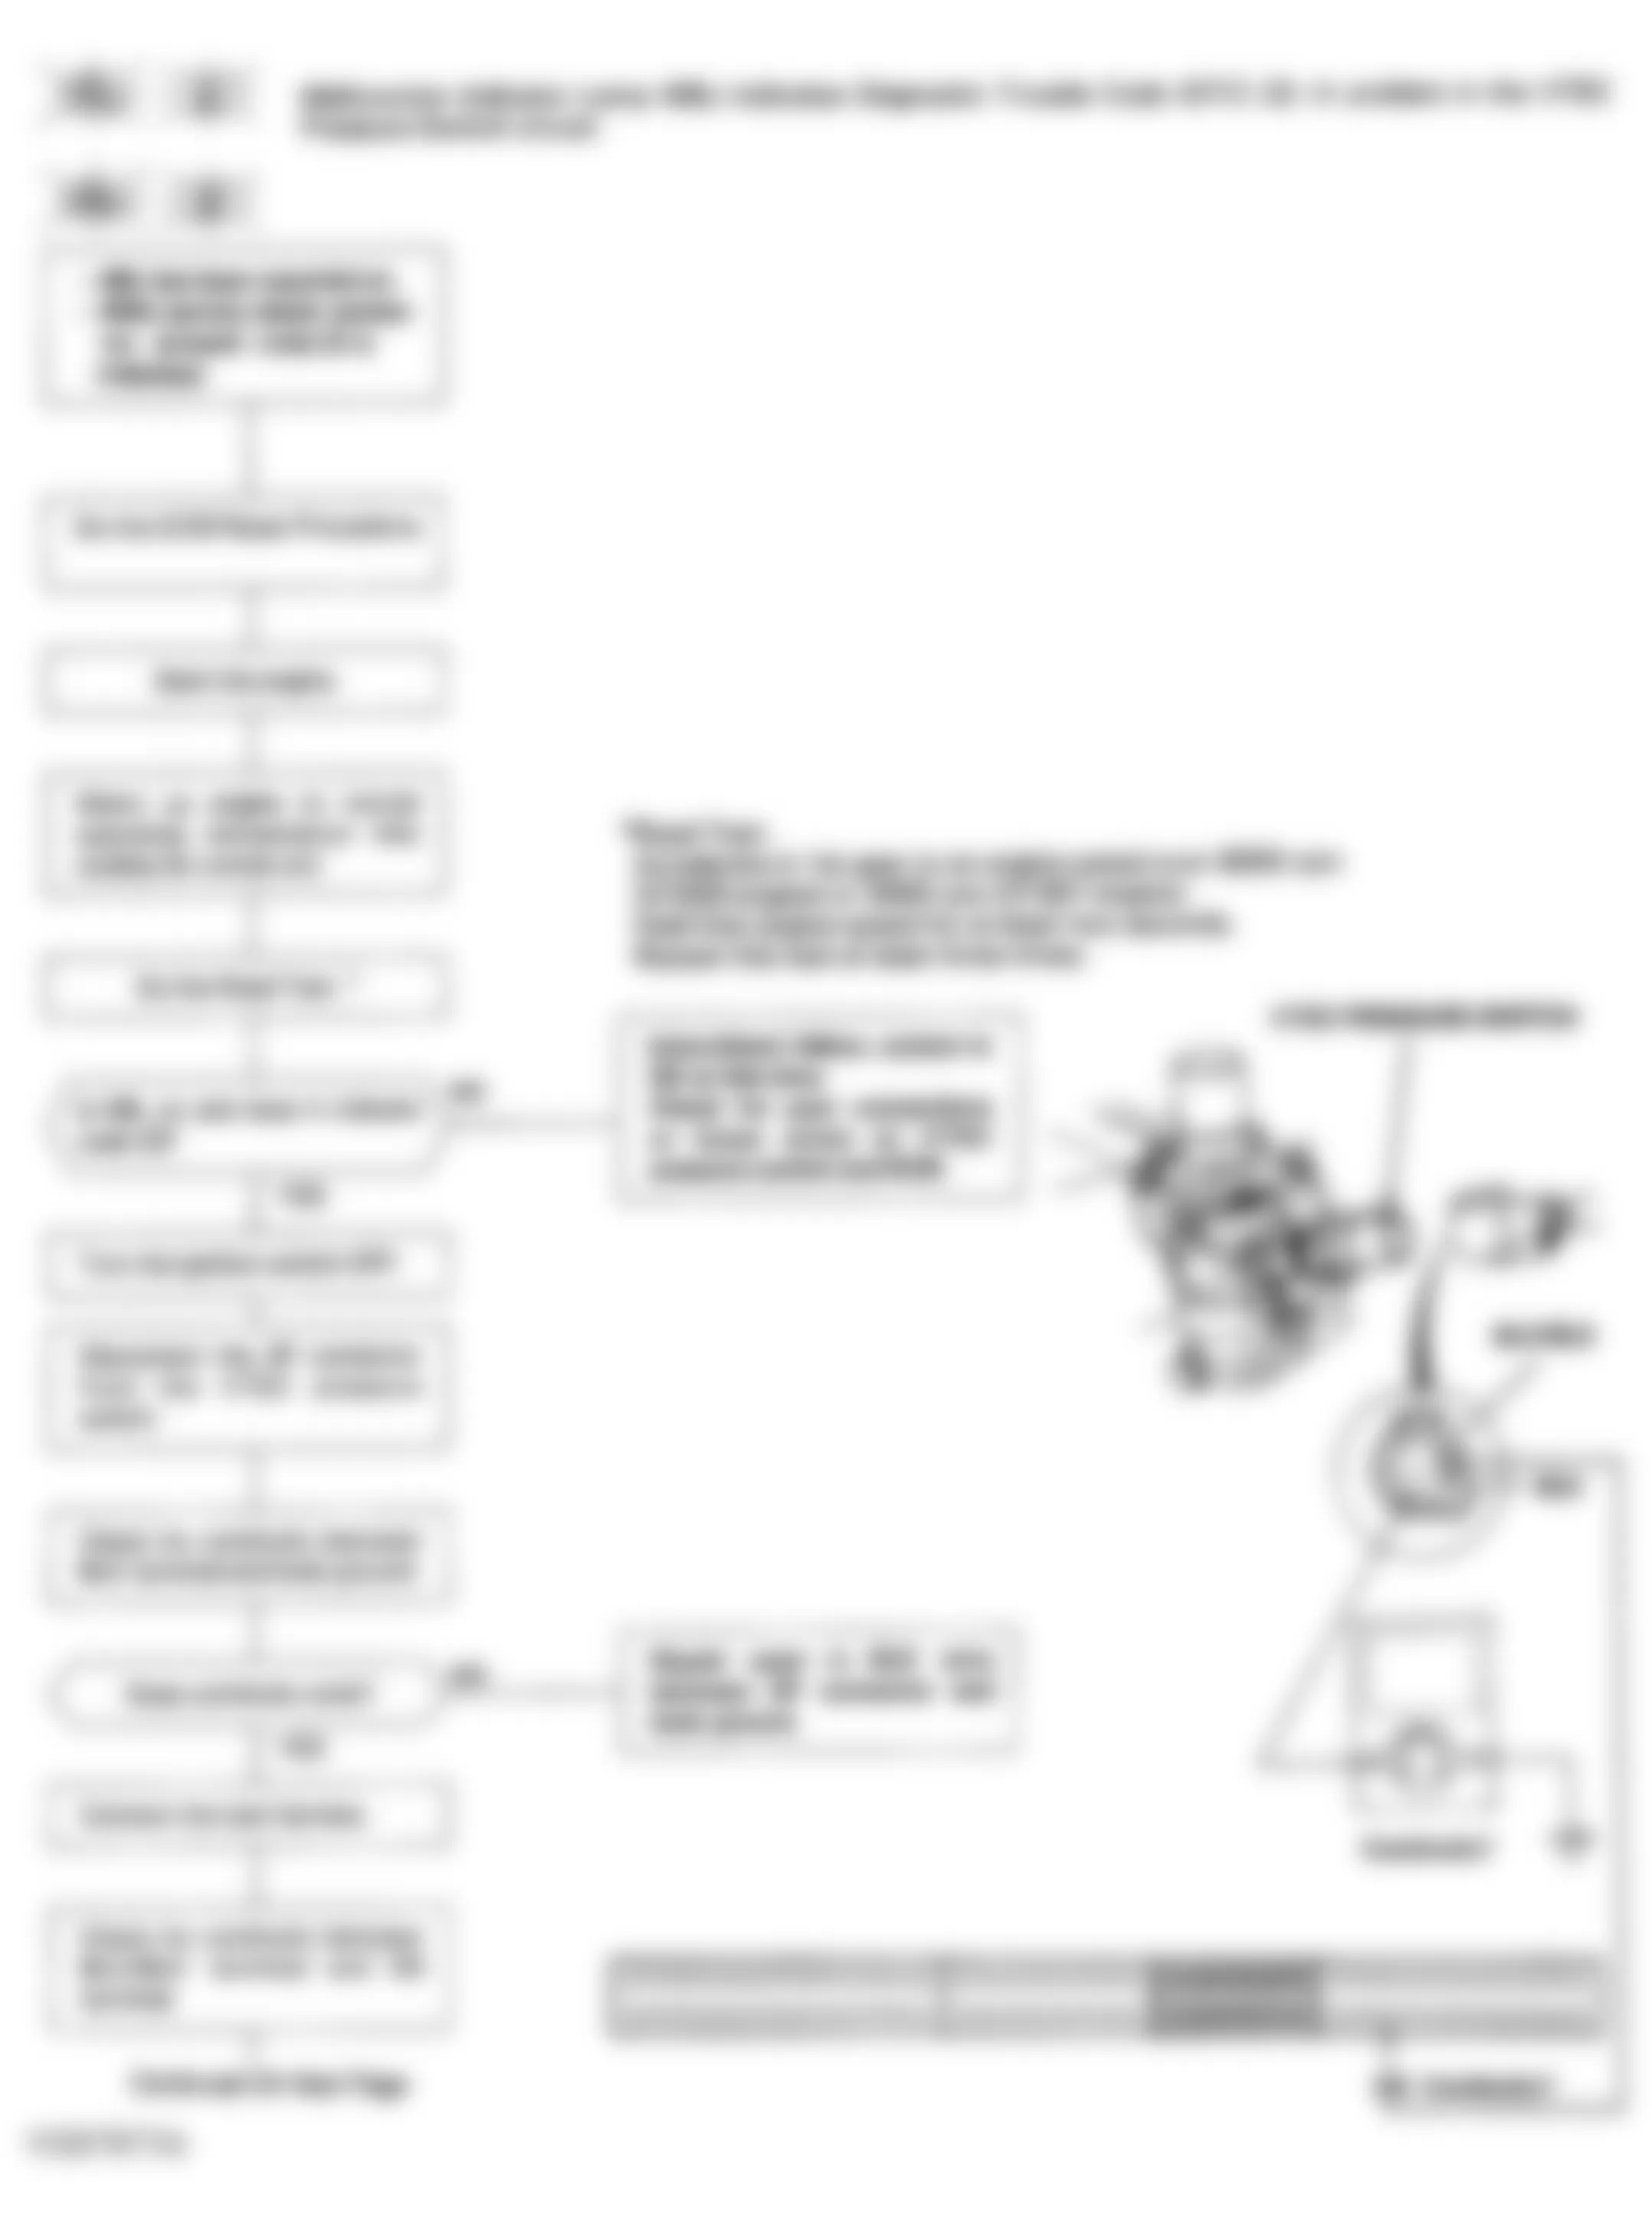 Honda Civic del Sol Si 1993 - Component Locations -  Code 22 Flowchart, VTEC Pressure Switch (1 of 3)